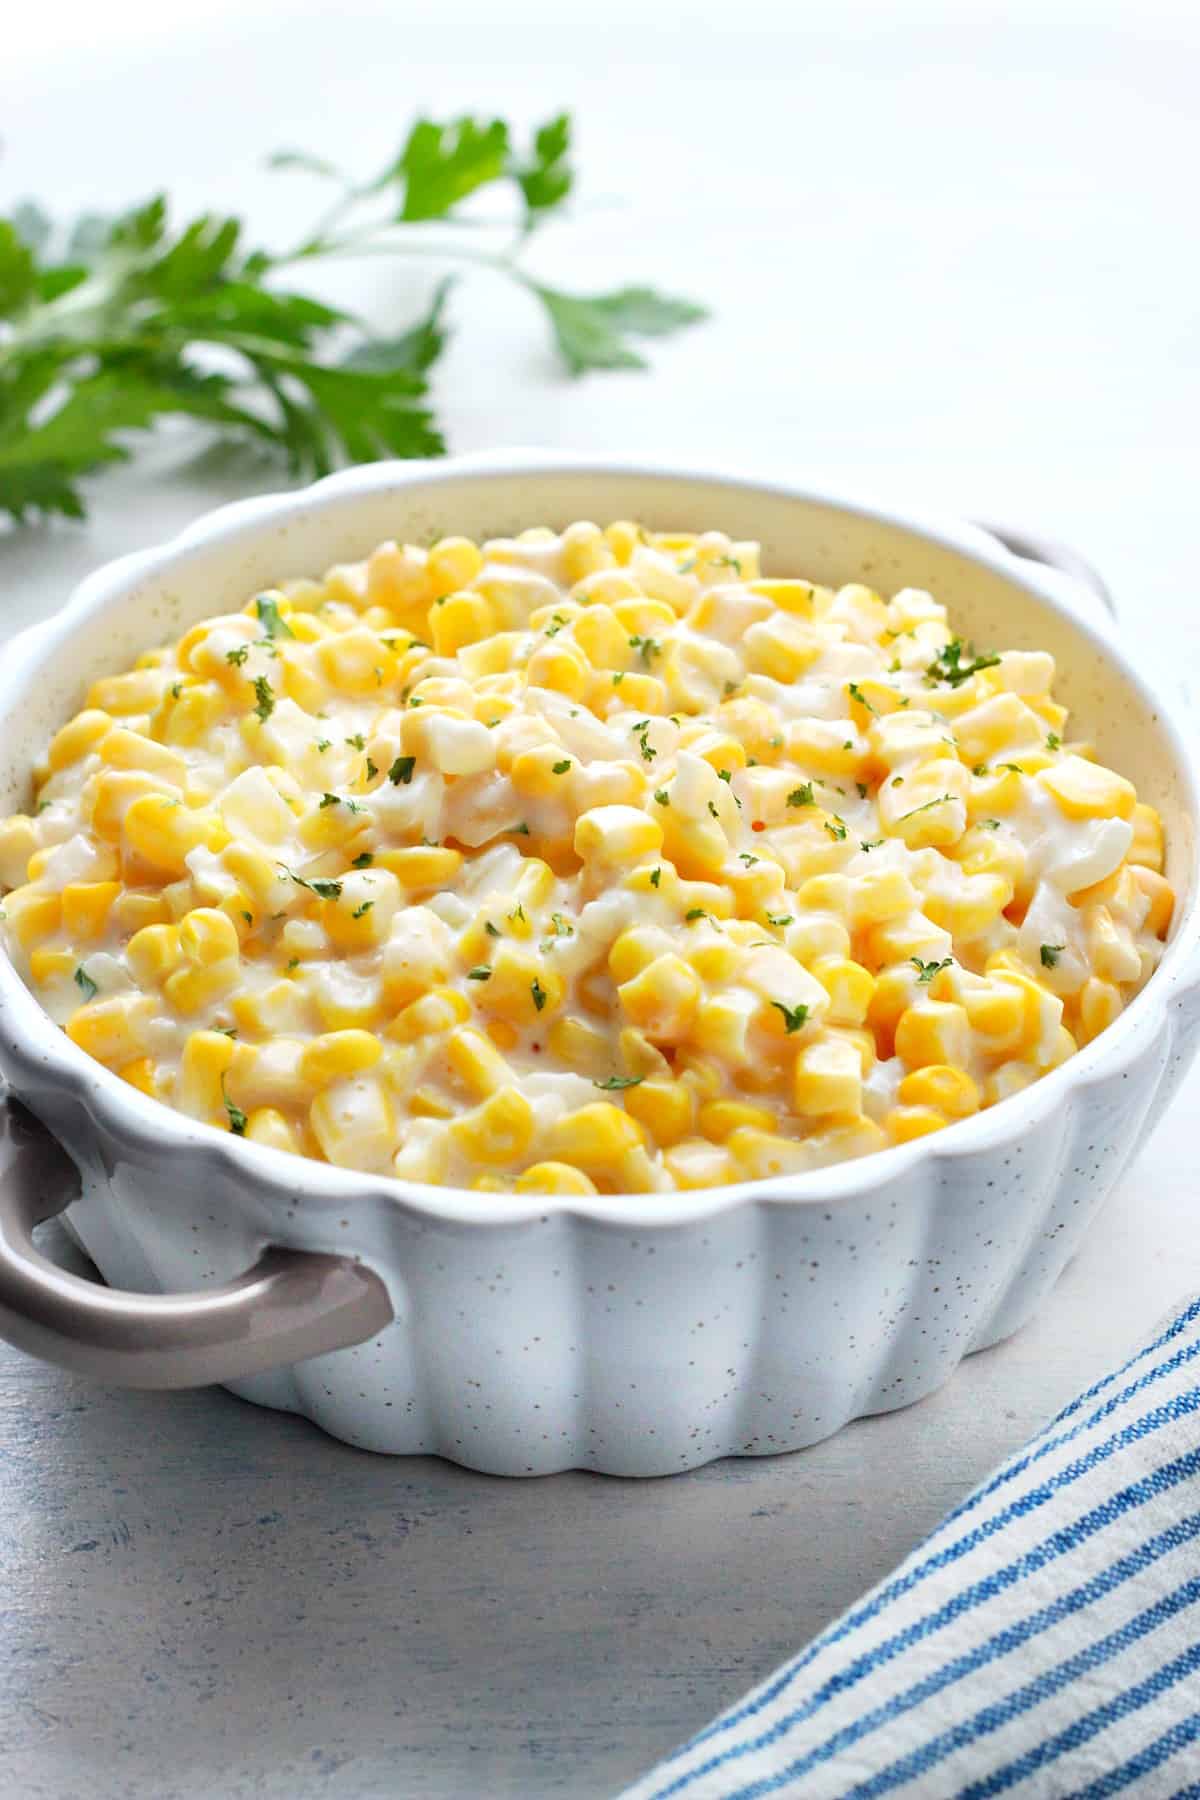 Corn in a creamy sauce in a dish.